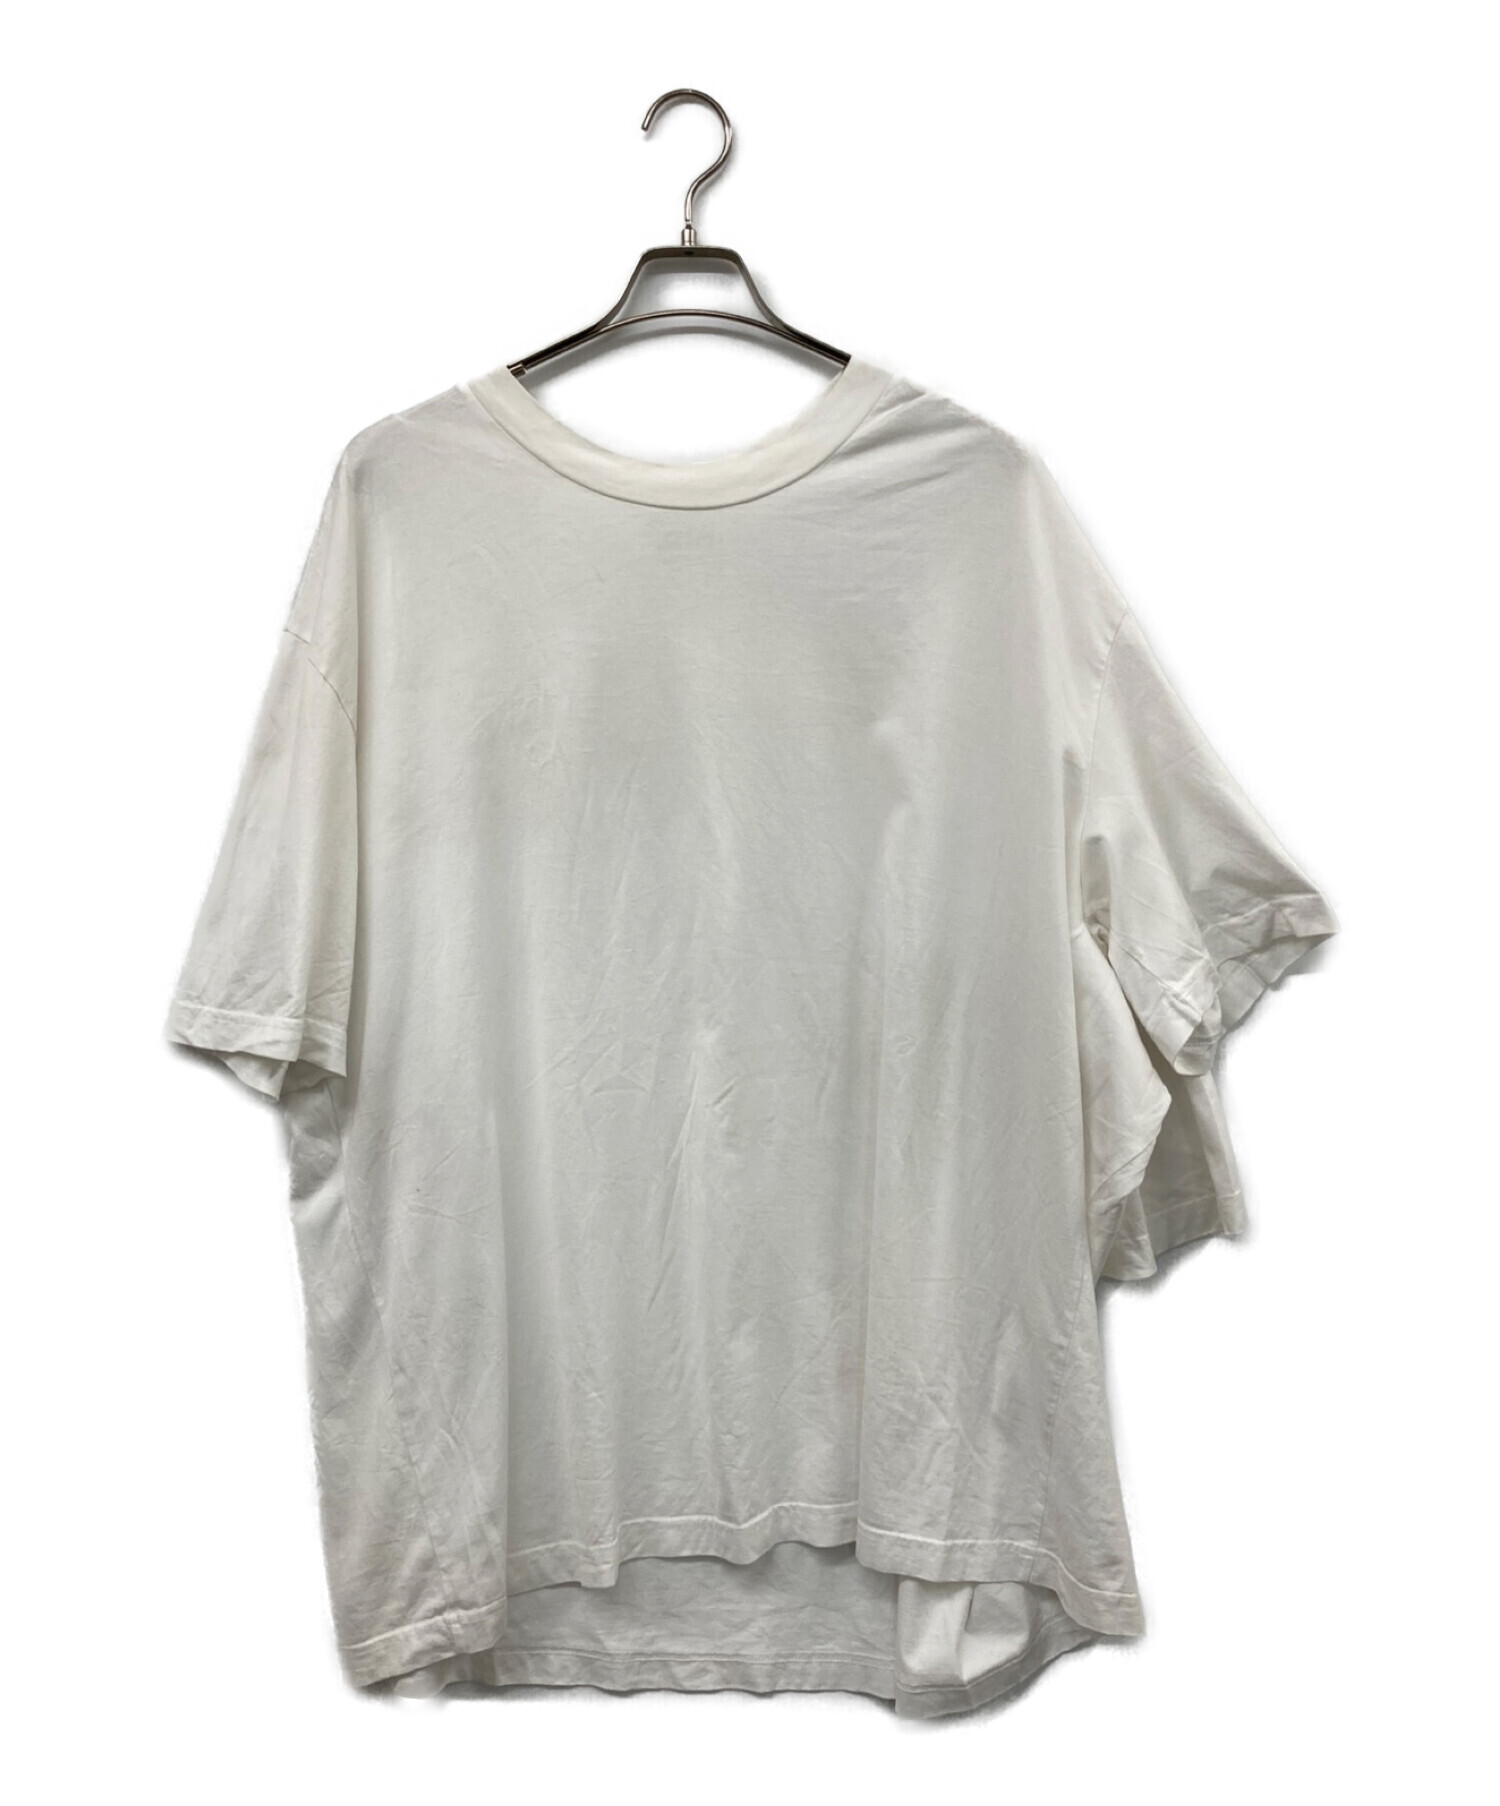 Maison Margiela (メゾンマルジェラ) オーバーサイズアシンメトリーTシャツ ホワイト サイズ:S